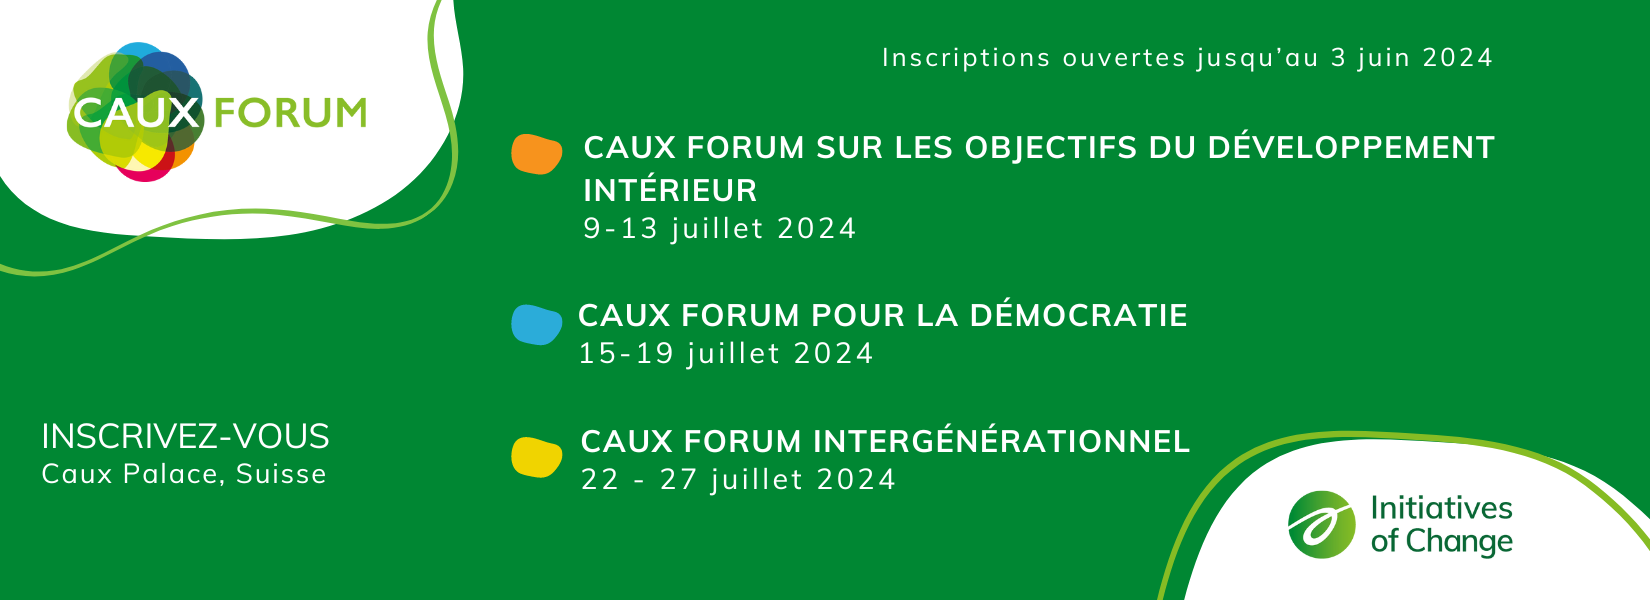 Caux Forum 2024 general Register now FR